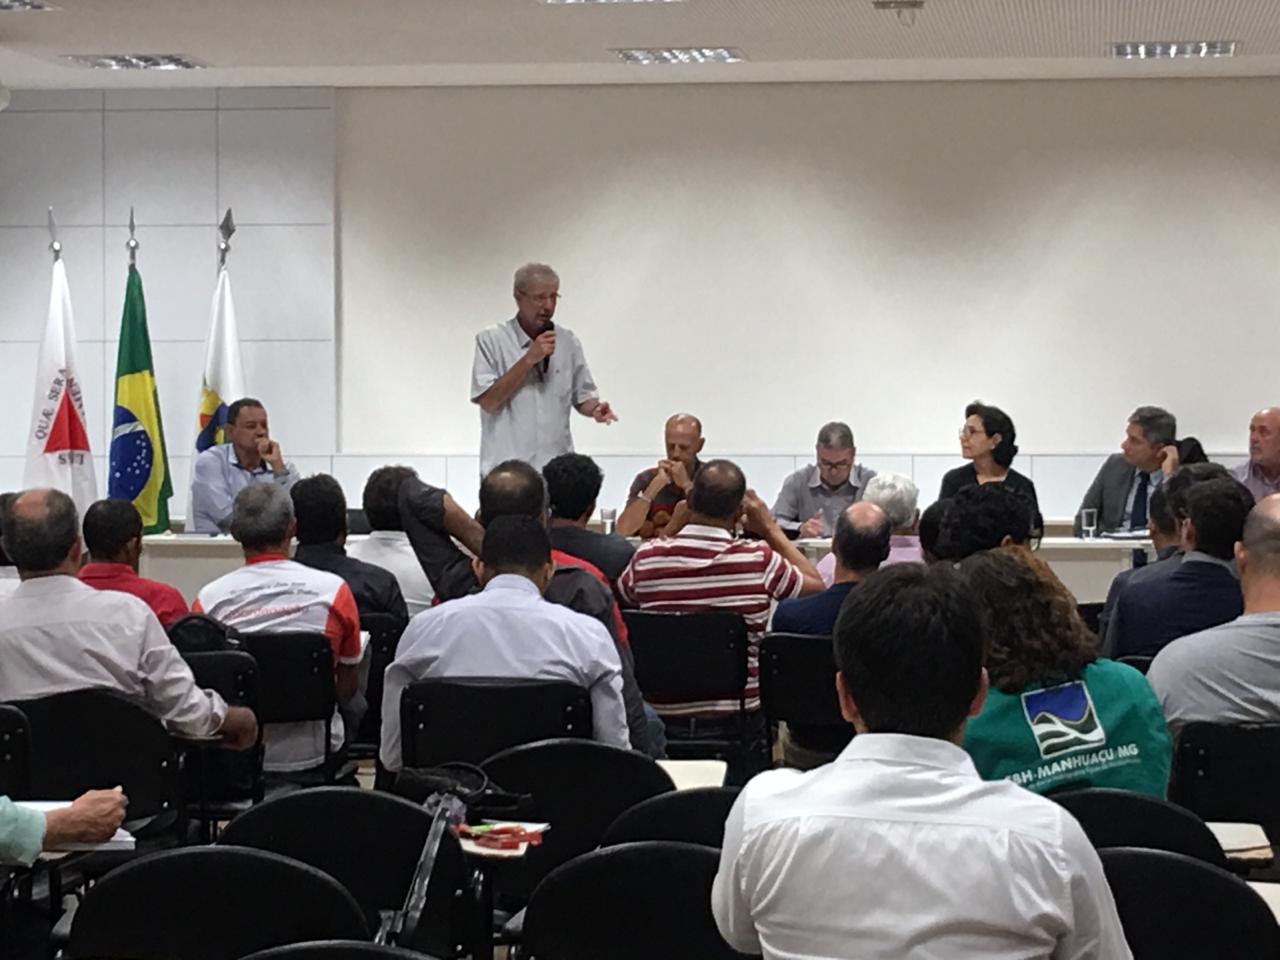 You are currently viewing Betão participa de discussão sobre crime em Brumadinho no Fórum Mineiro de Comitês de Bacias Hidrográficas de Minas Gerais